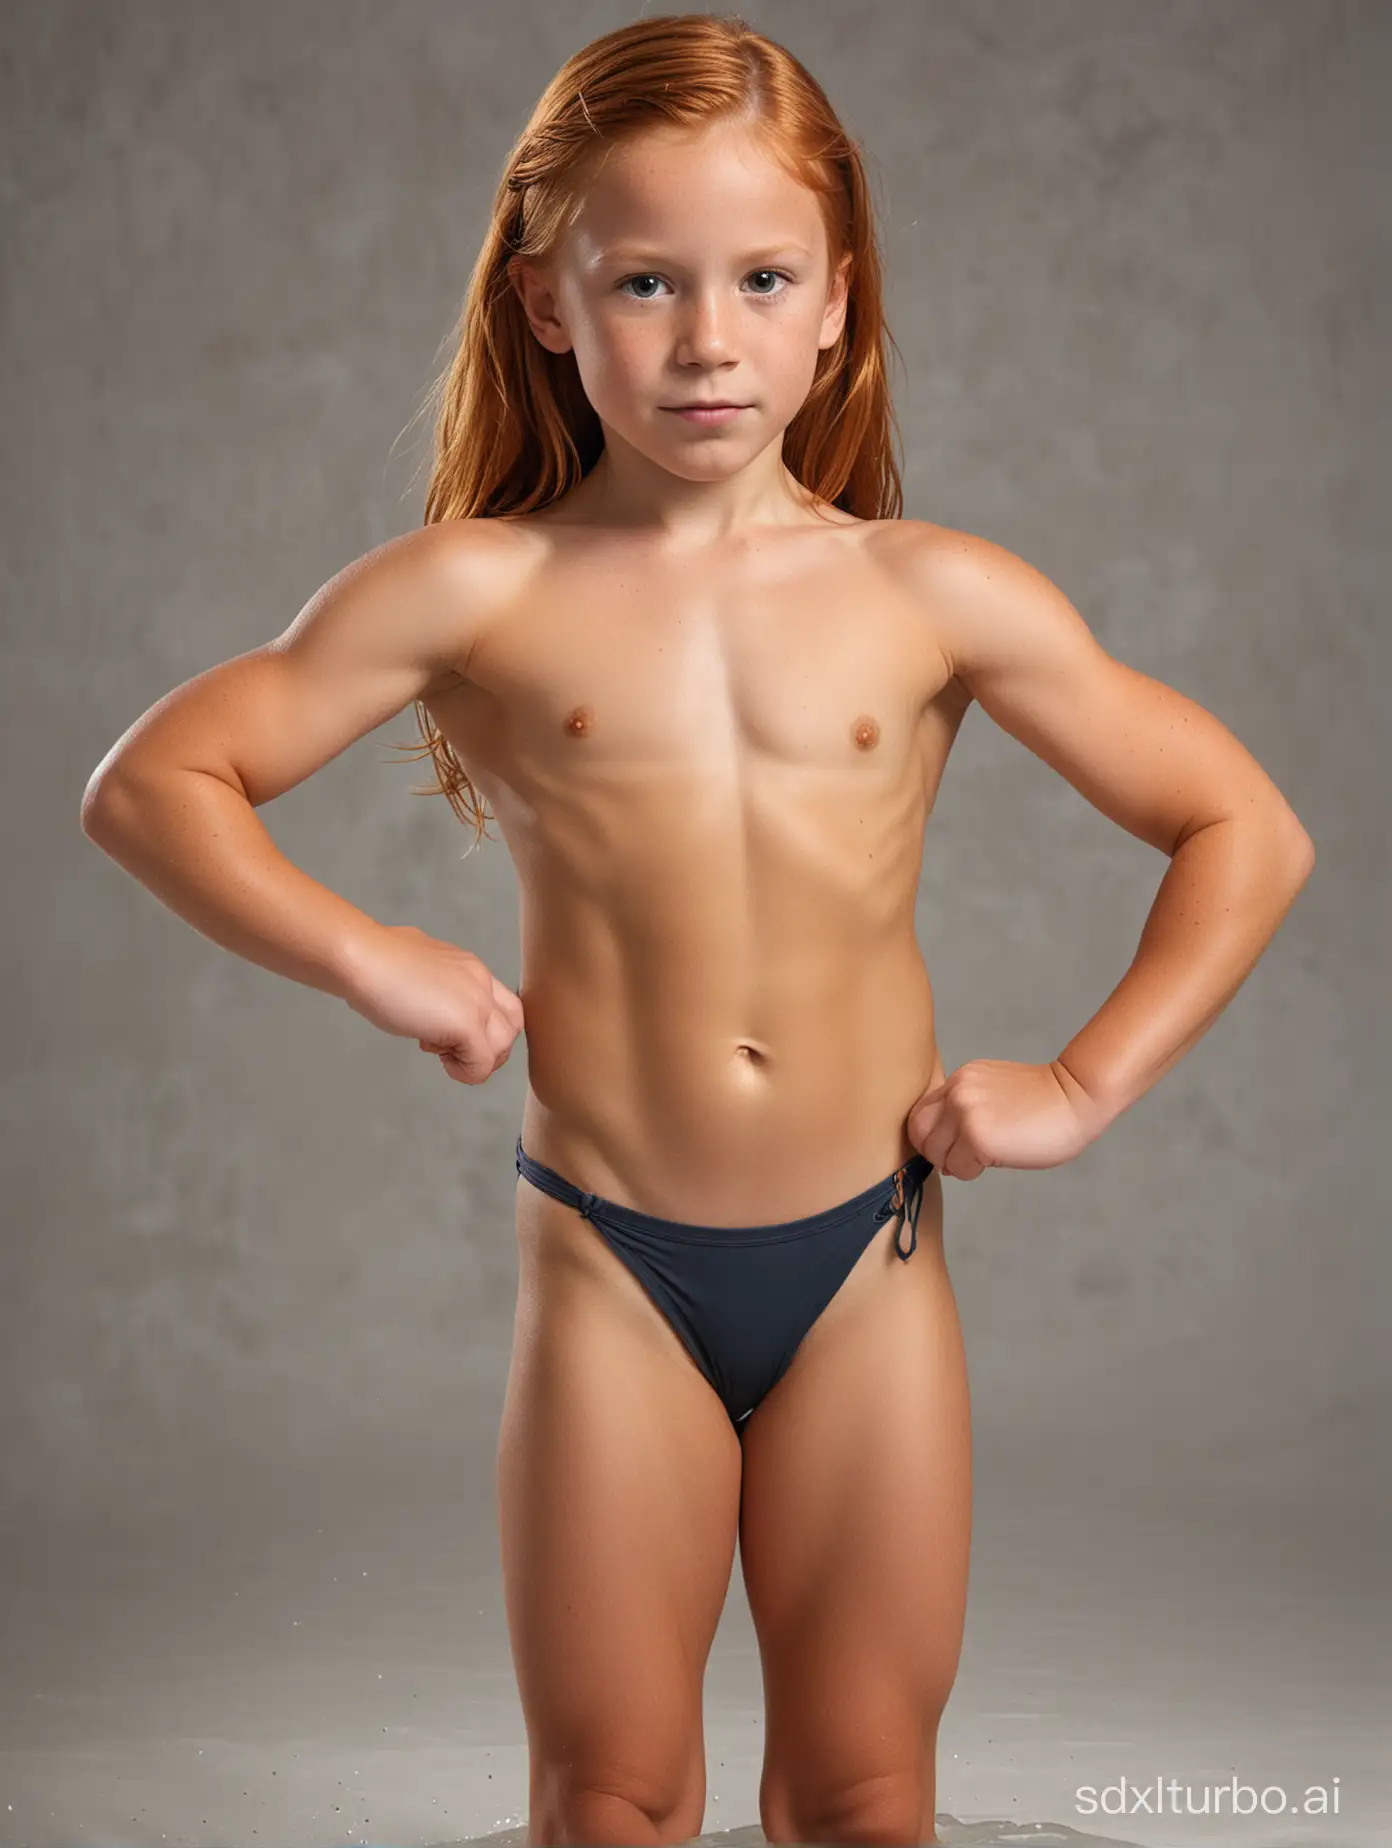 7 years old ginger hari girl, very muscular abs, string bathingsuit